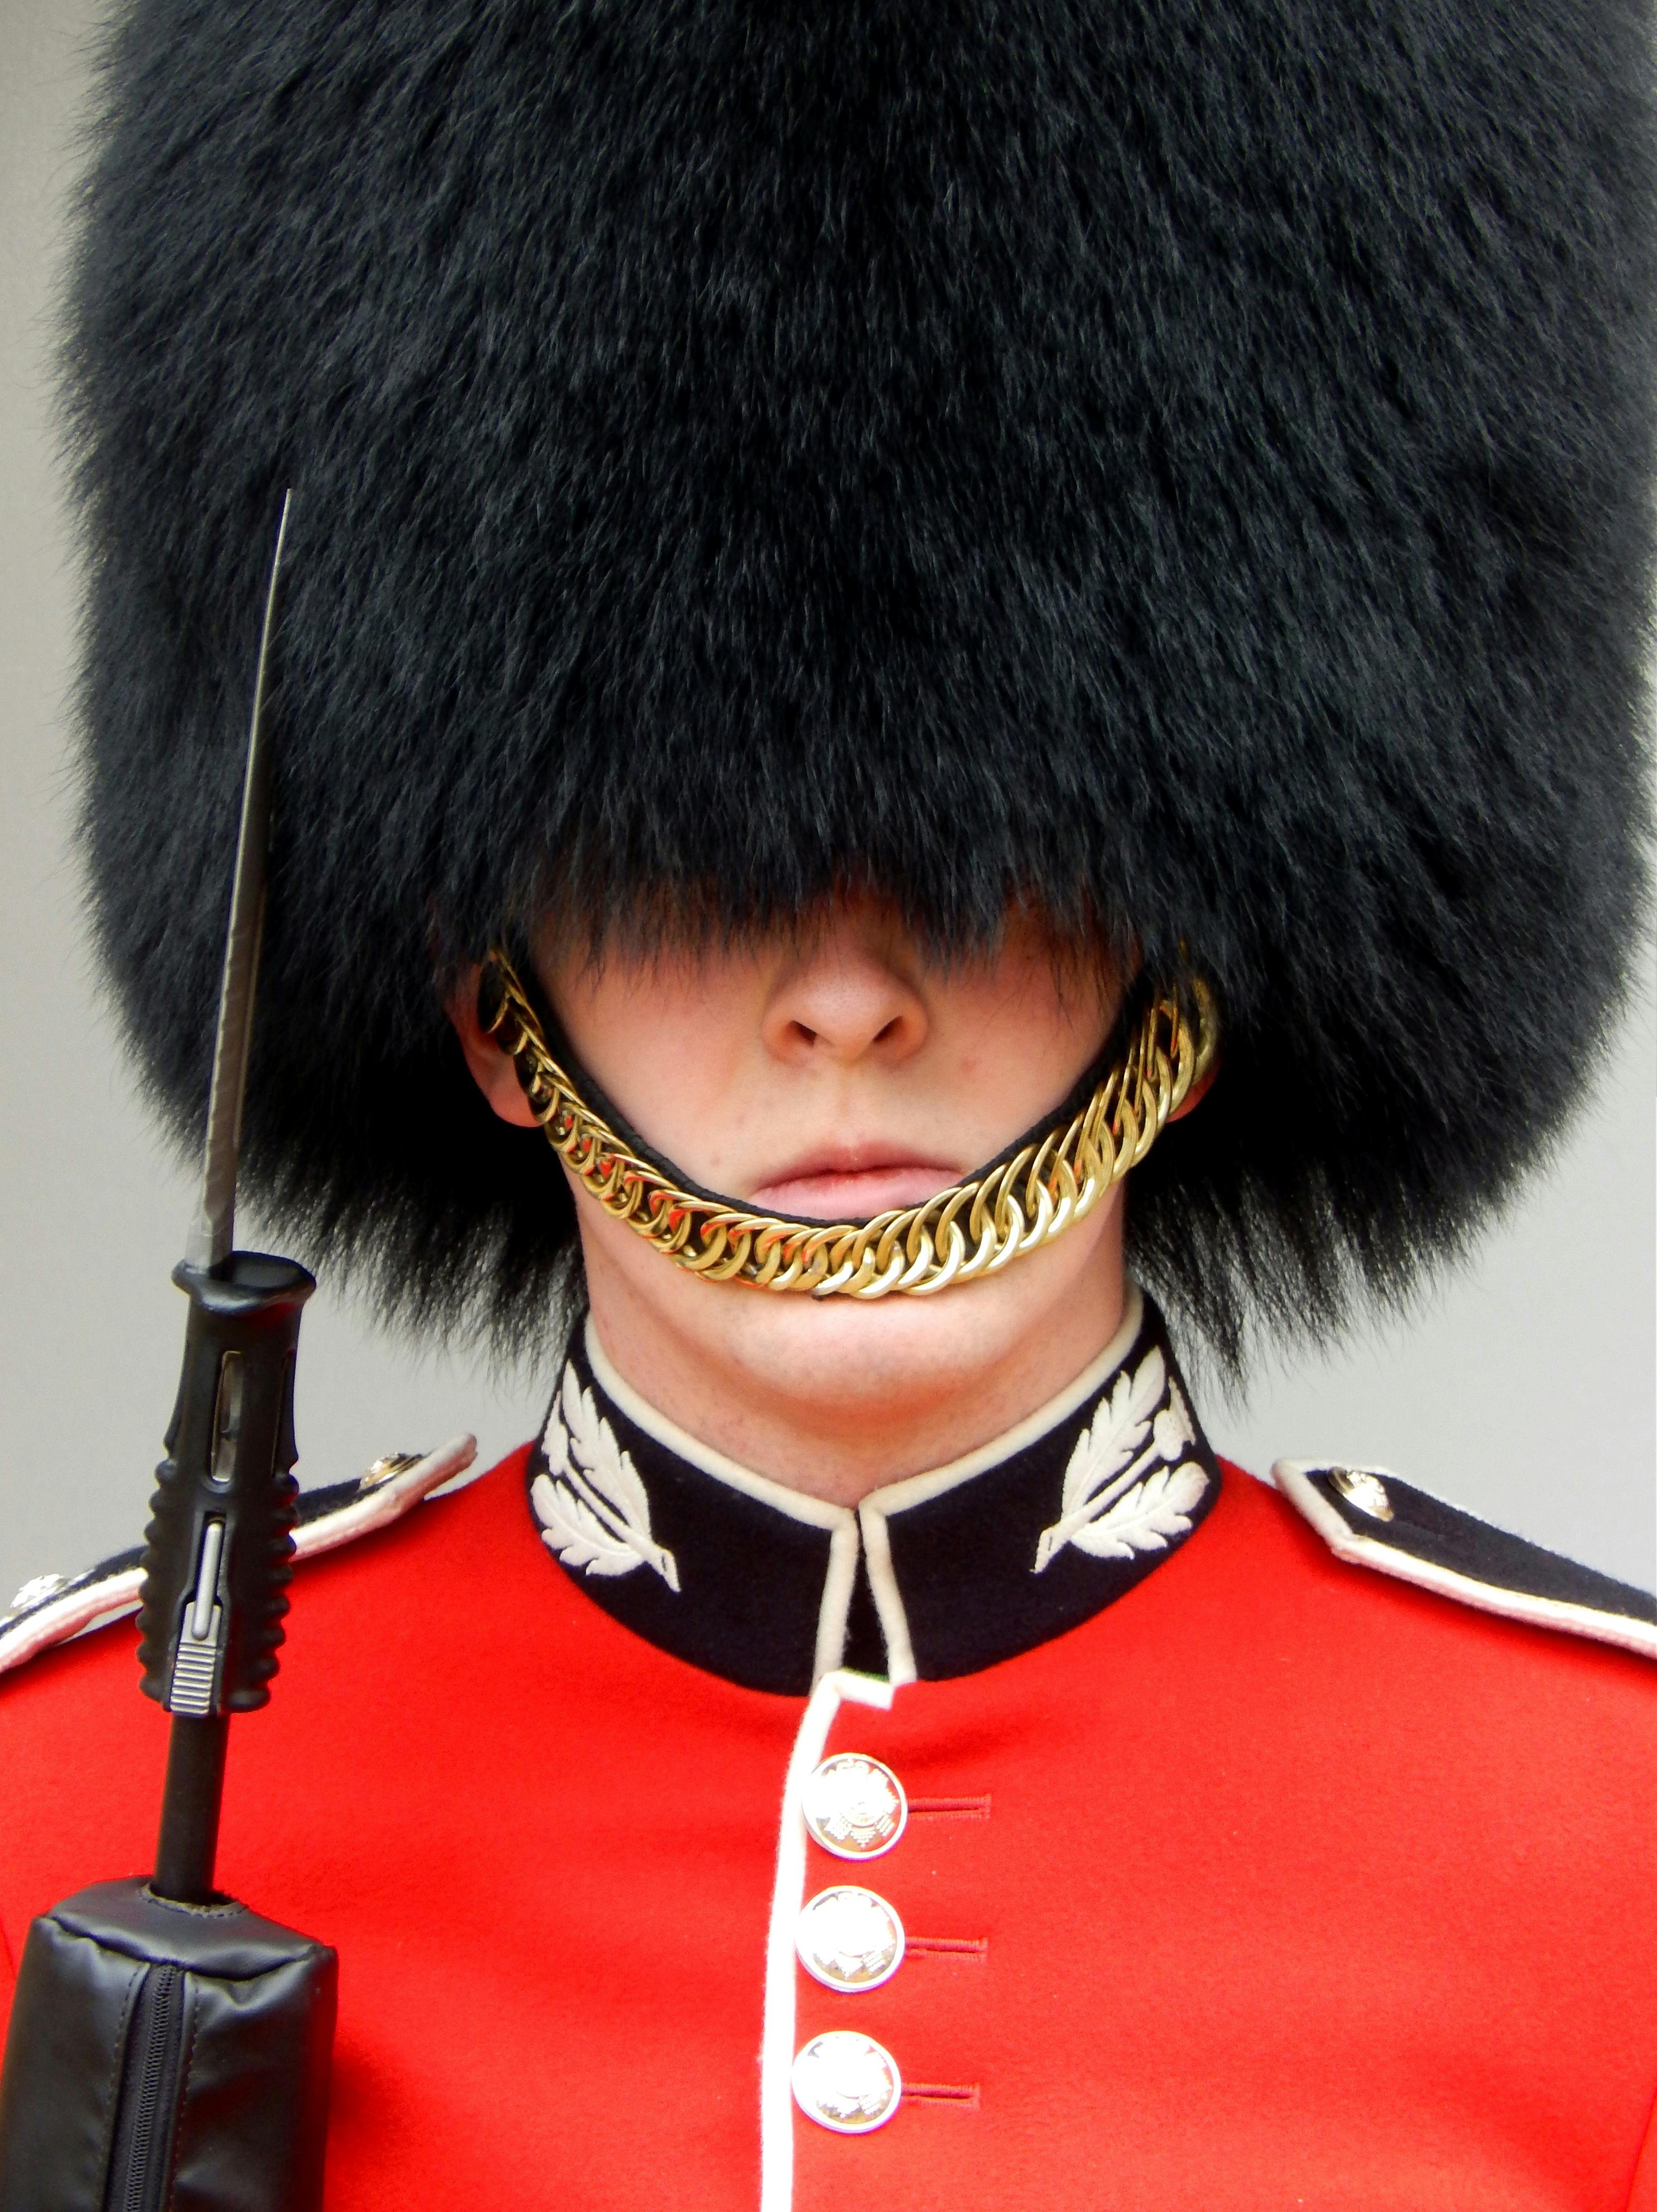 a royal guard wearing his uniform